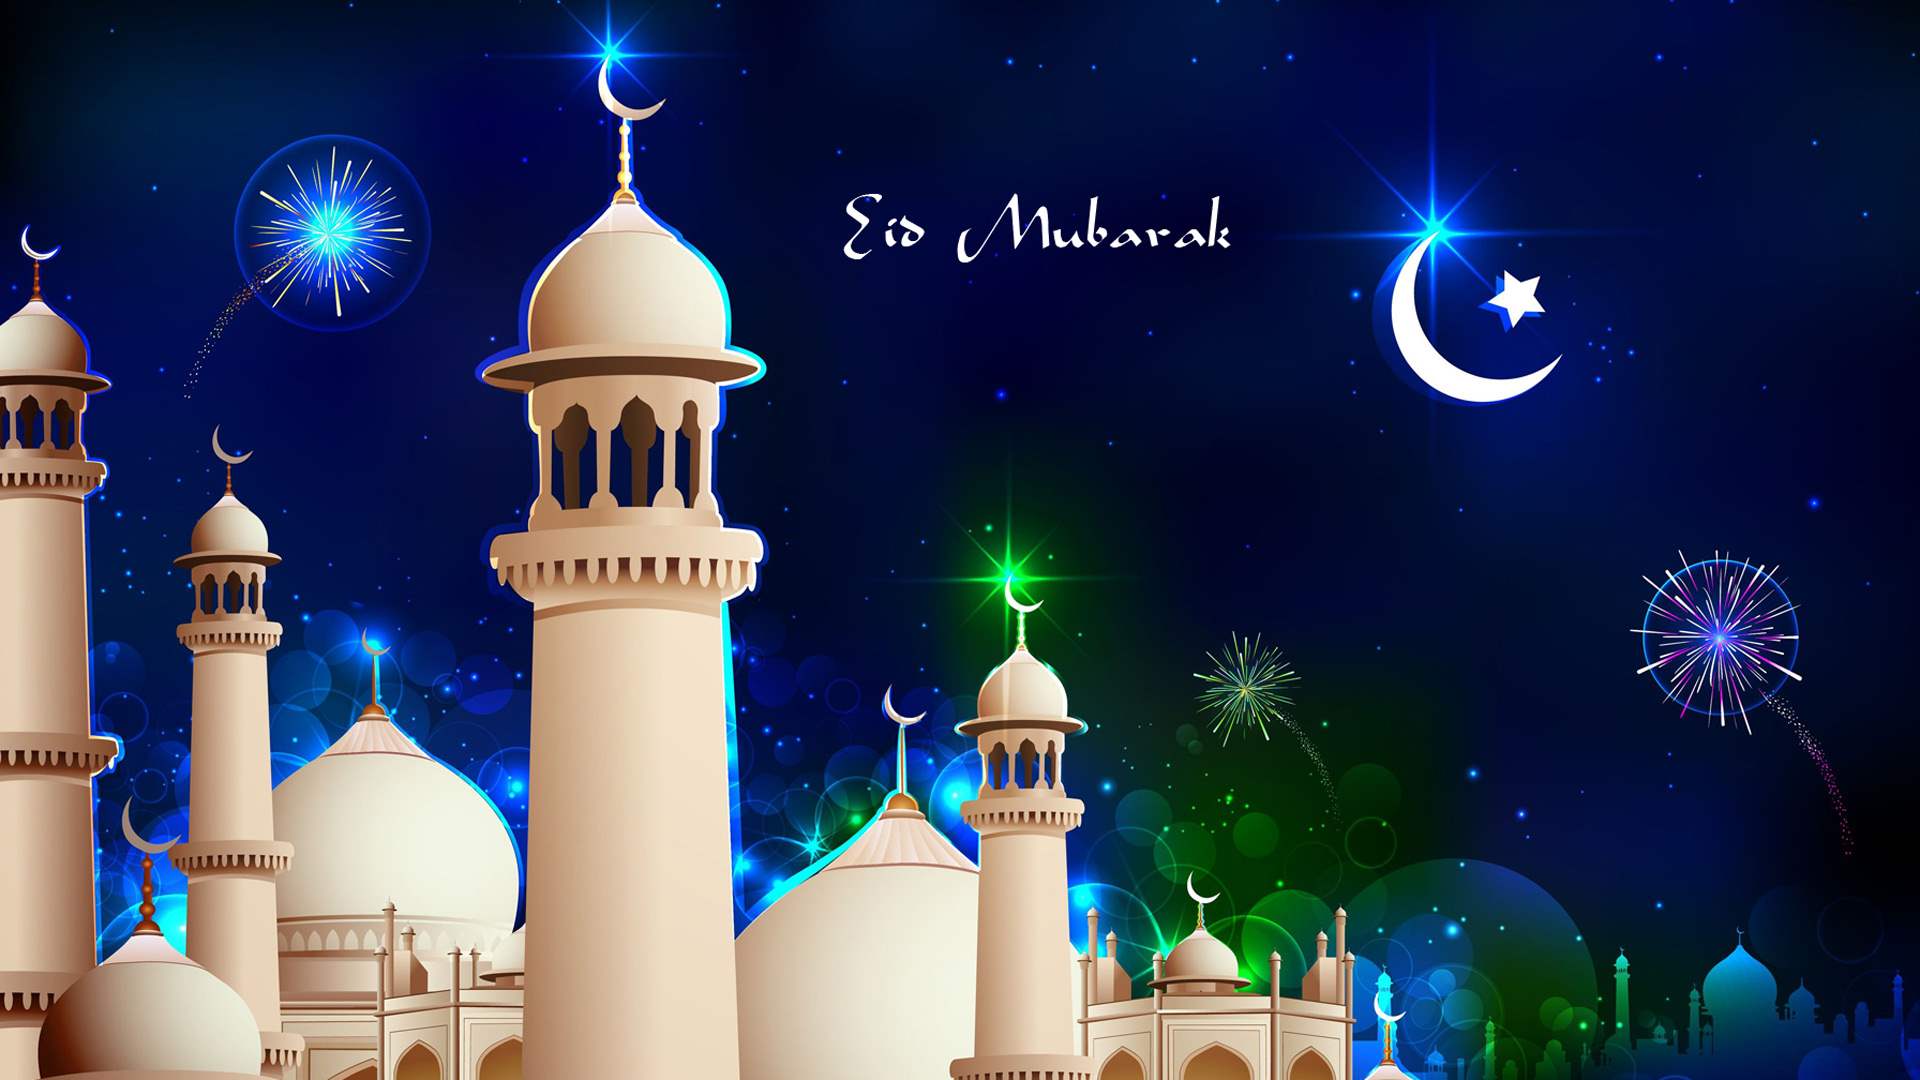 Ramadan Wallpaper Images - Free Download on Freepik